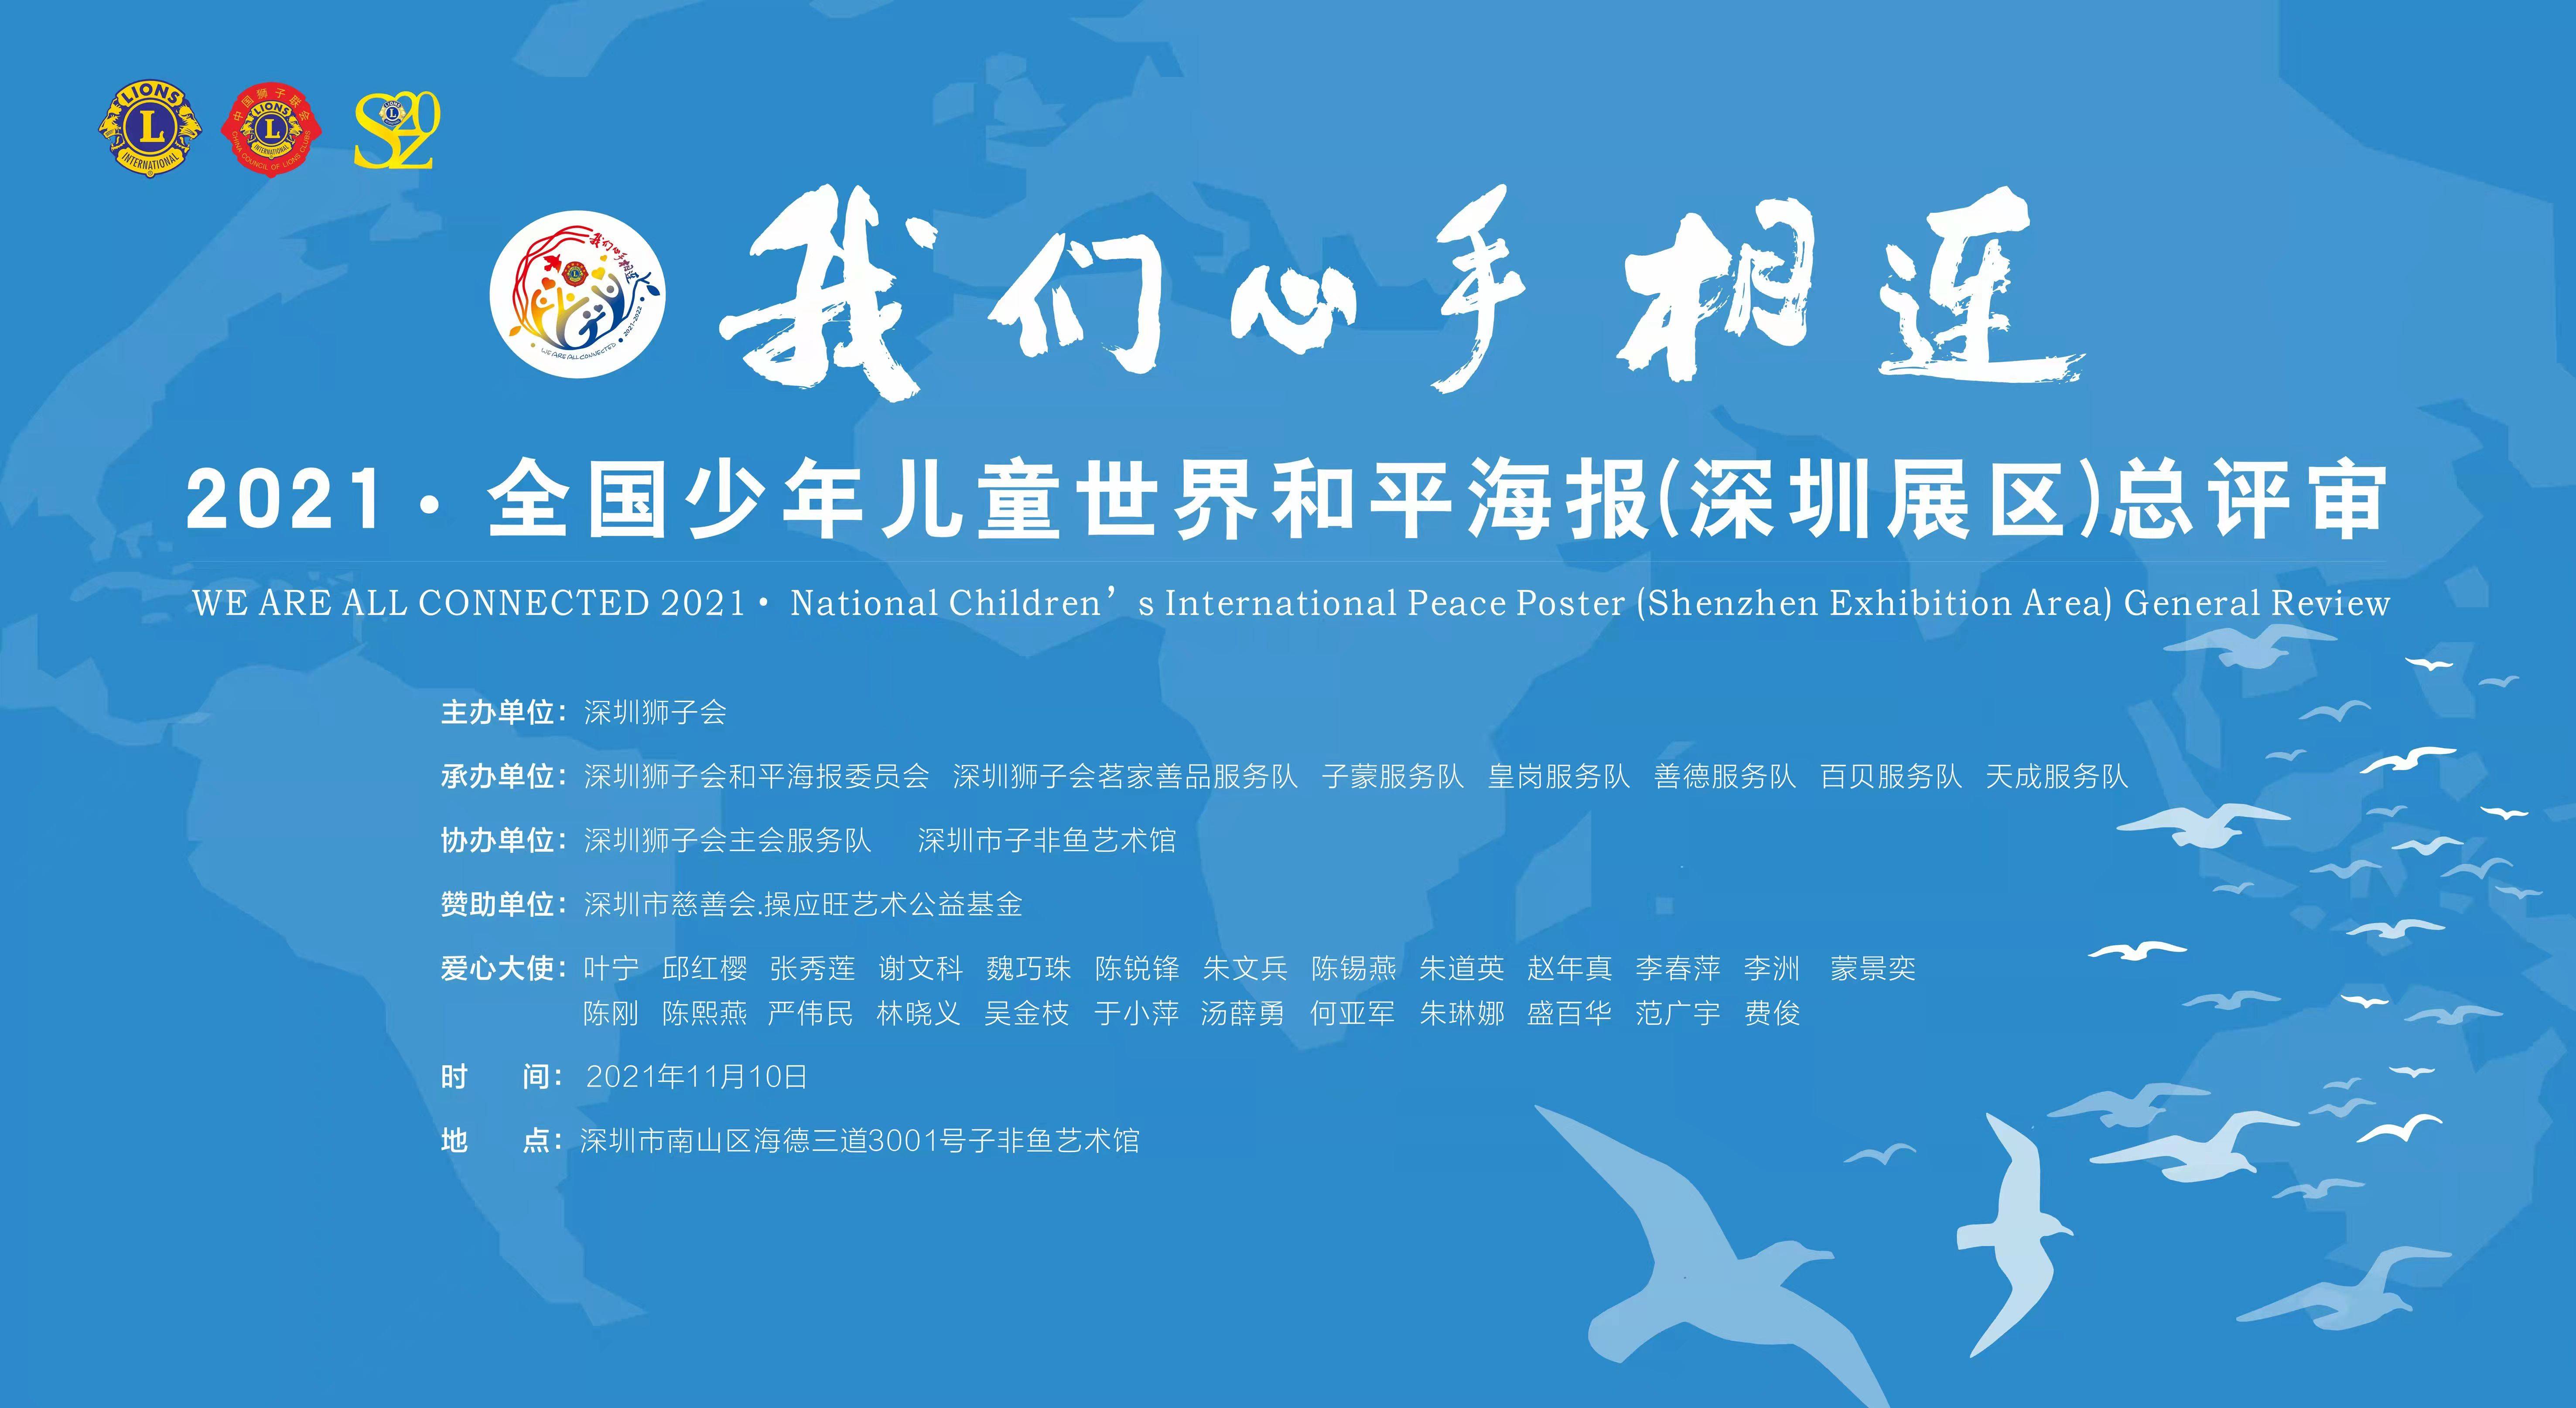 深圳狮子会世界和平海报总评审操应旺艺术公益基金参与支持